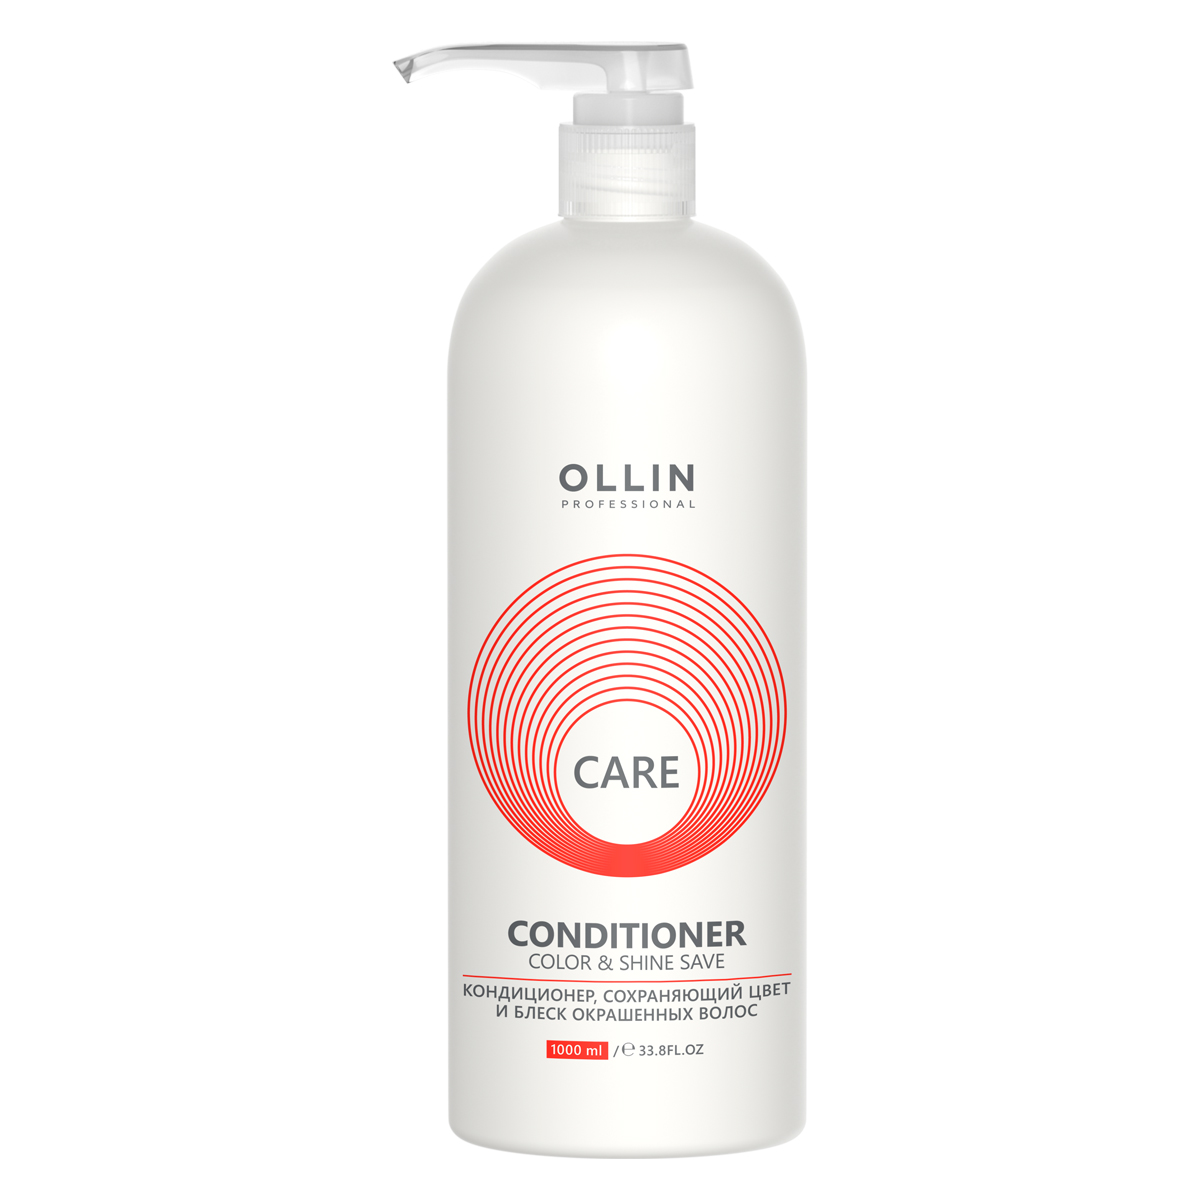 Ollin Professional Кондиционер, сохраняющий цвет и блеск окрашенных волос, 1000 мл (Ollin Professional, Care)